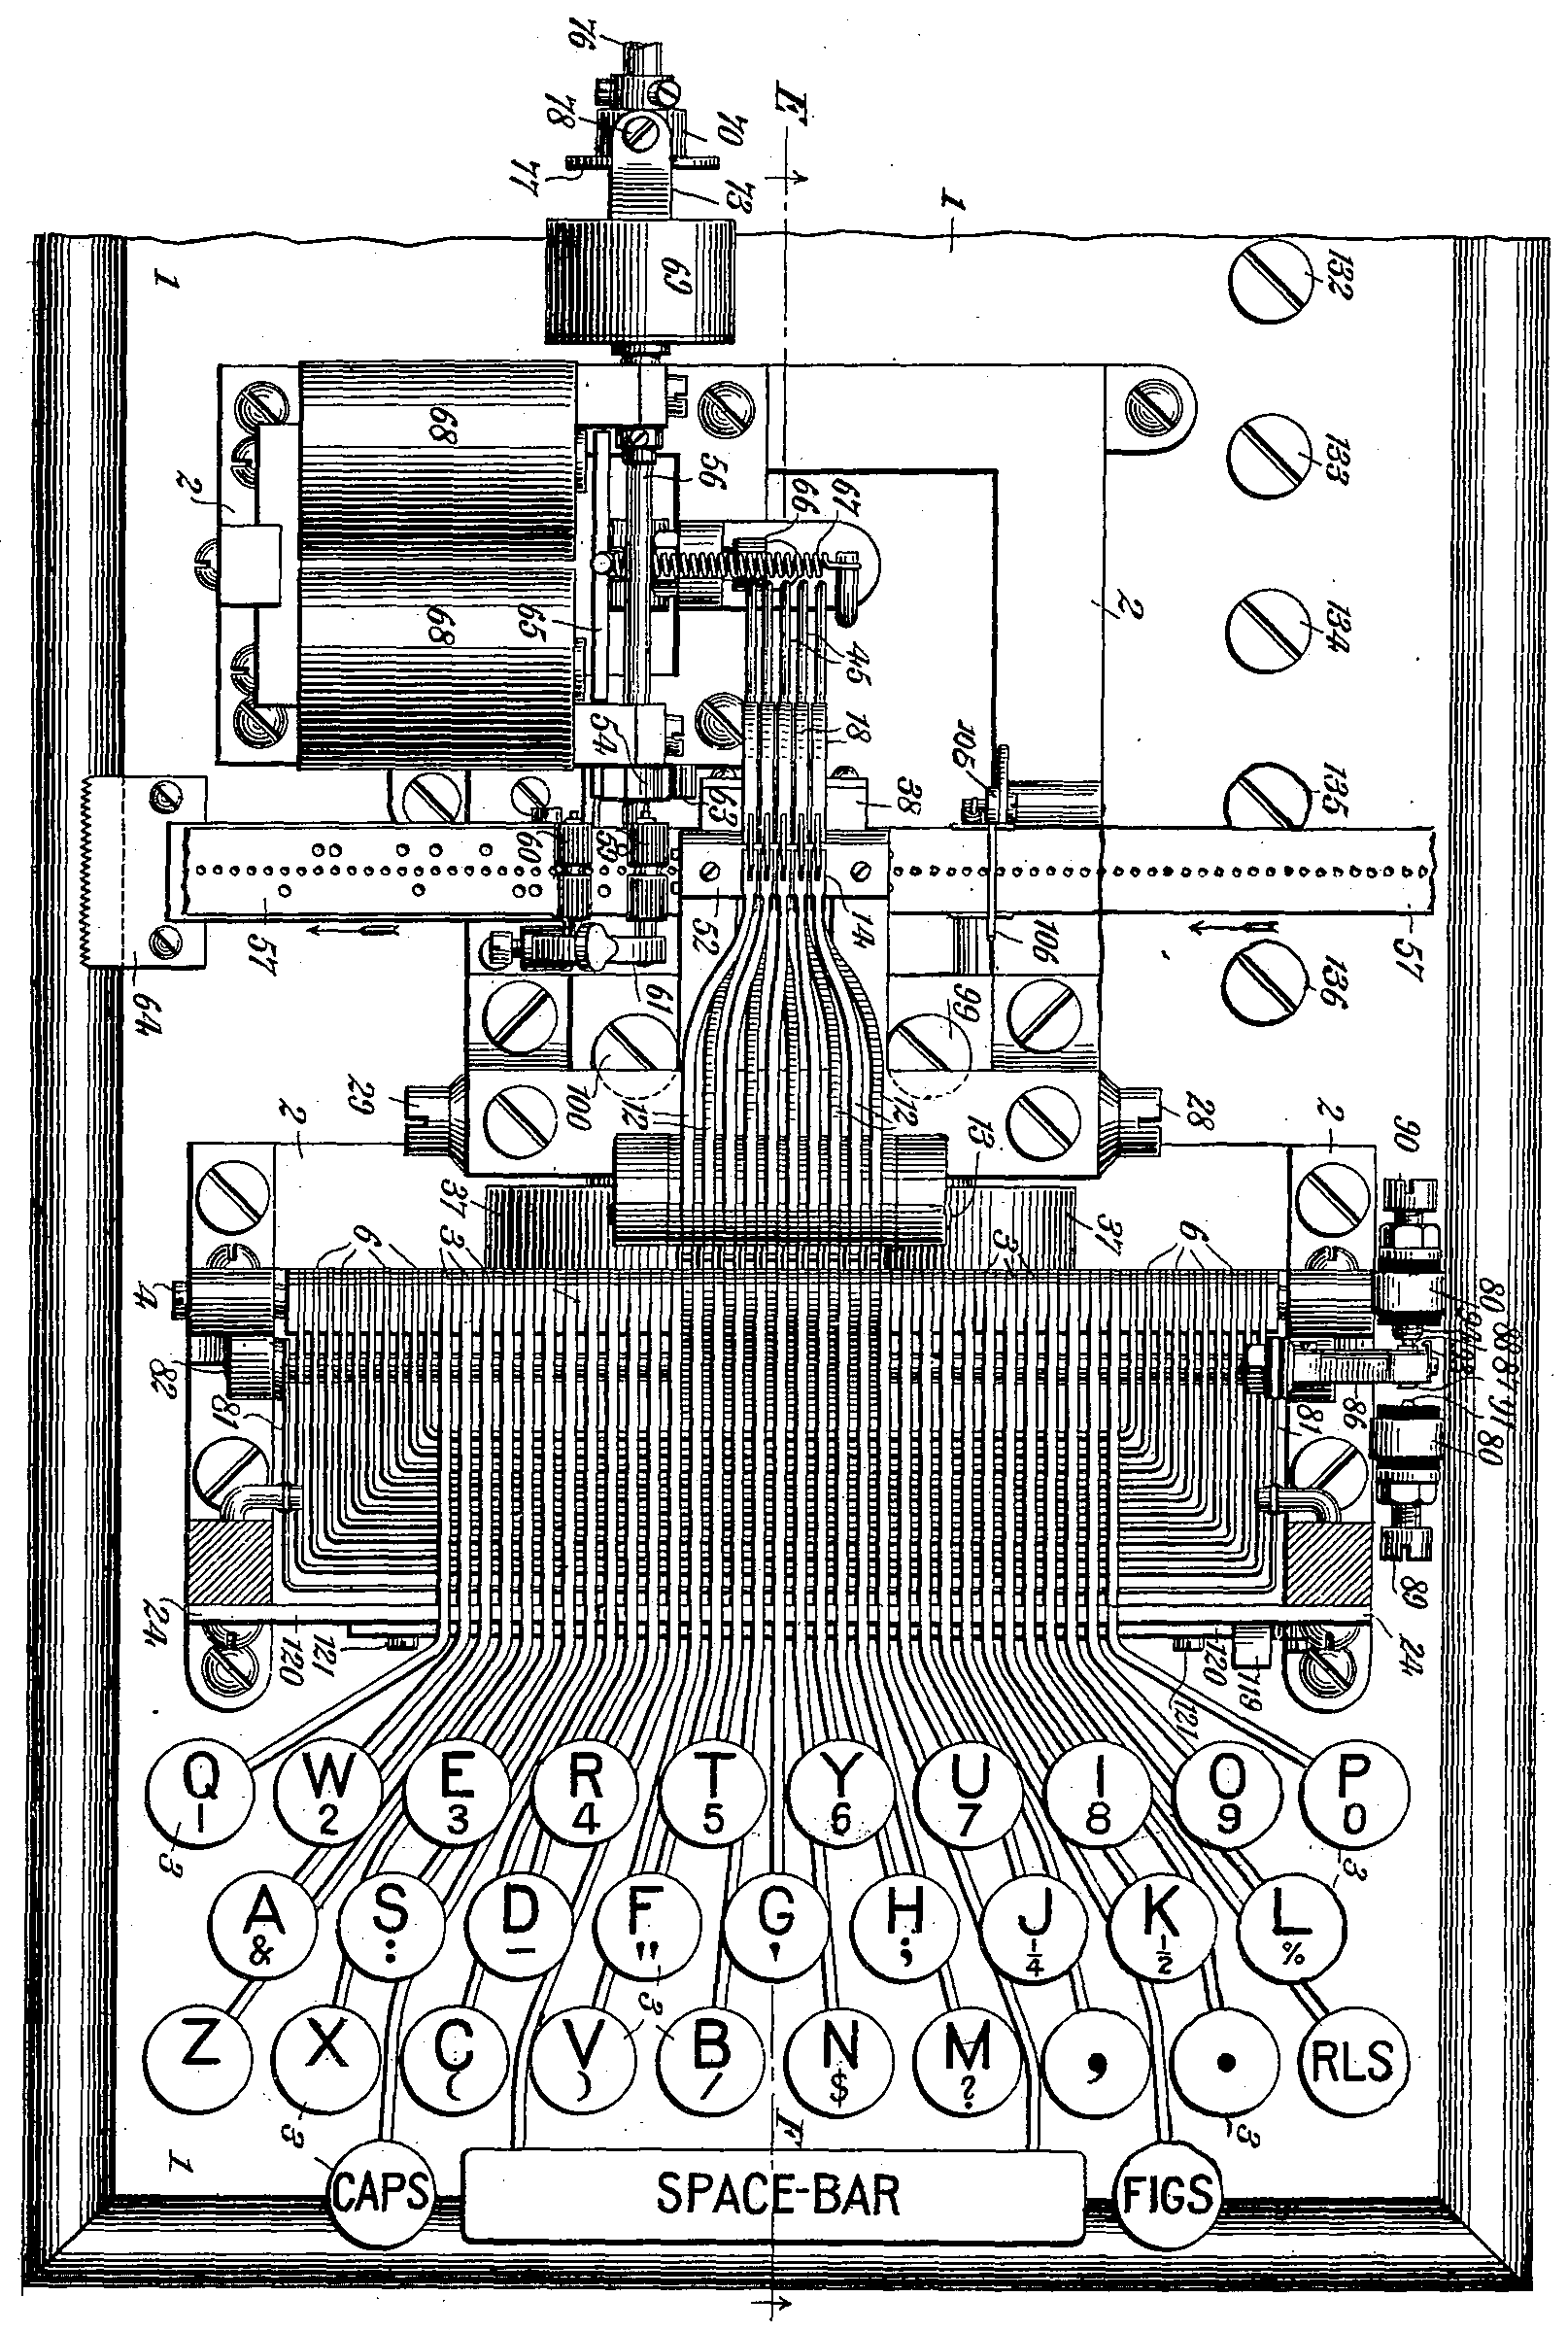 送信側の鑽孔タイプライター(U.S. Patent No. 710163)